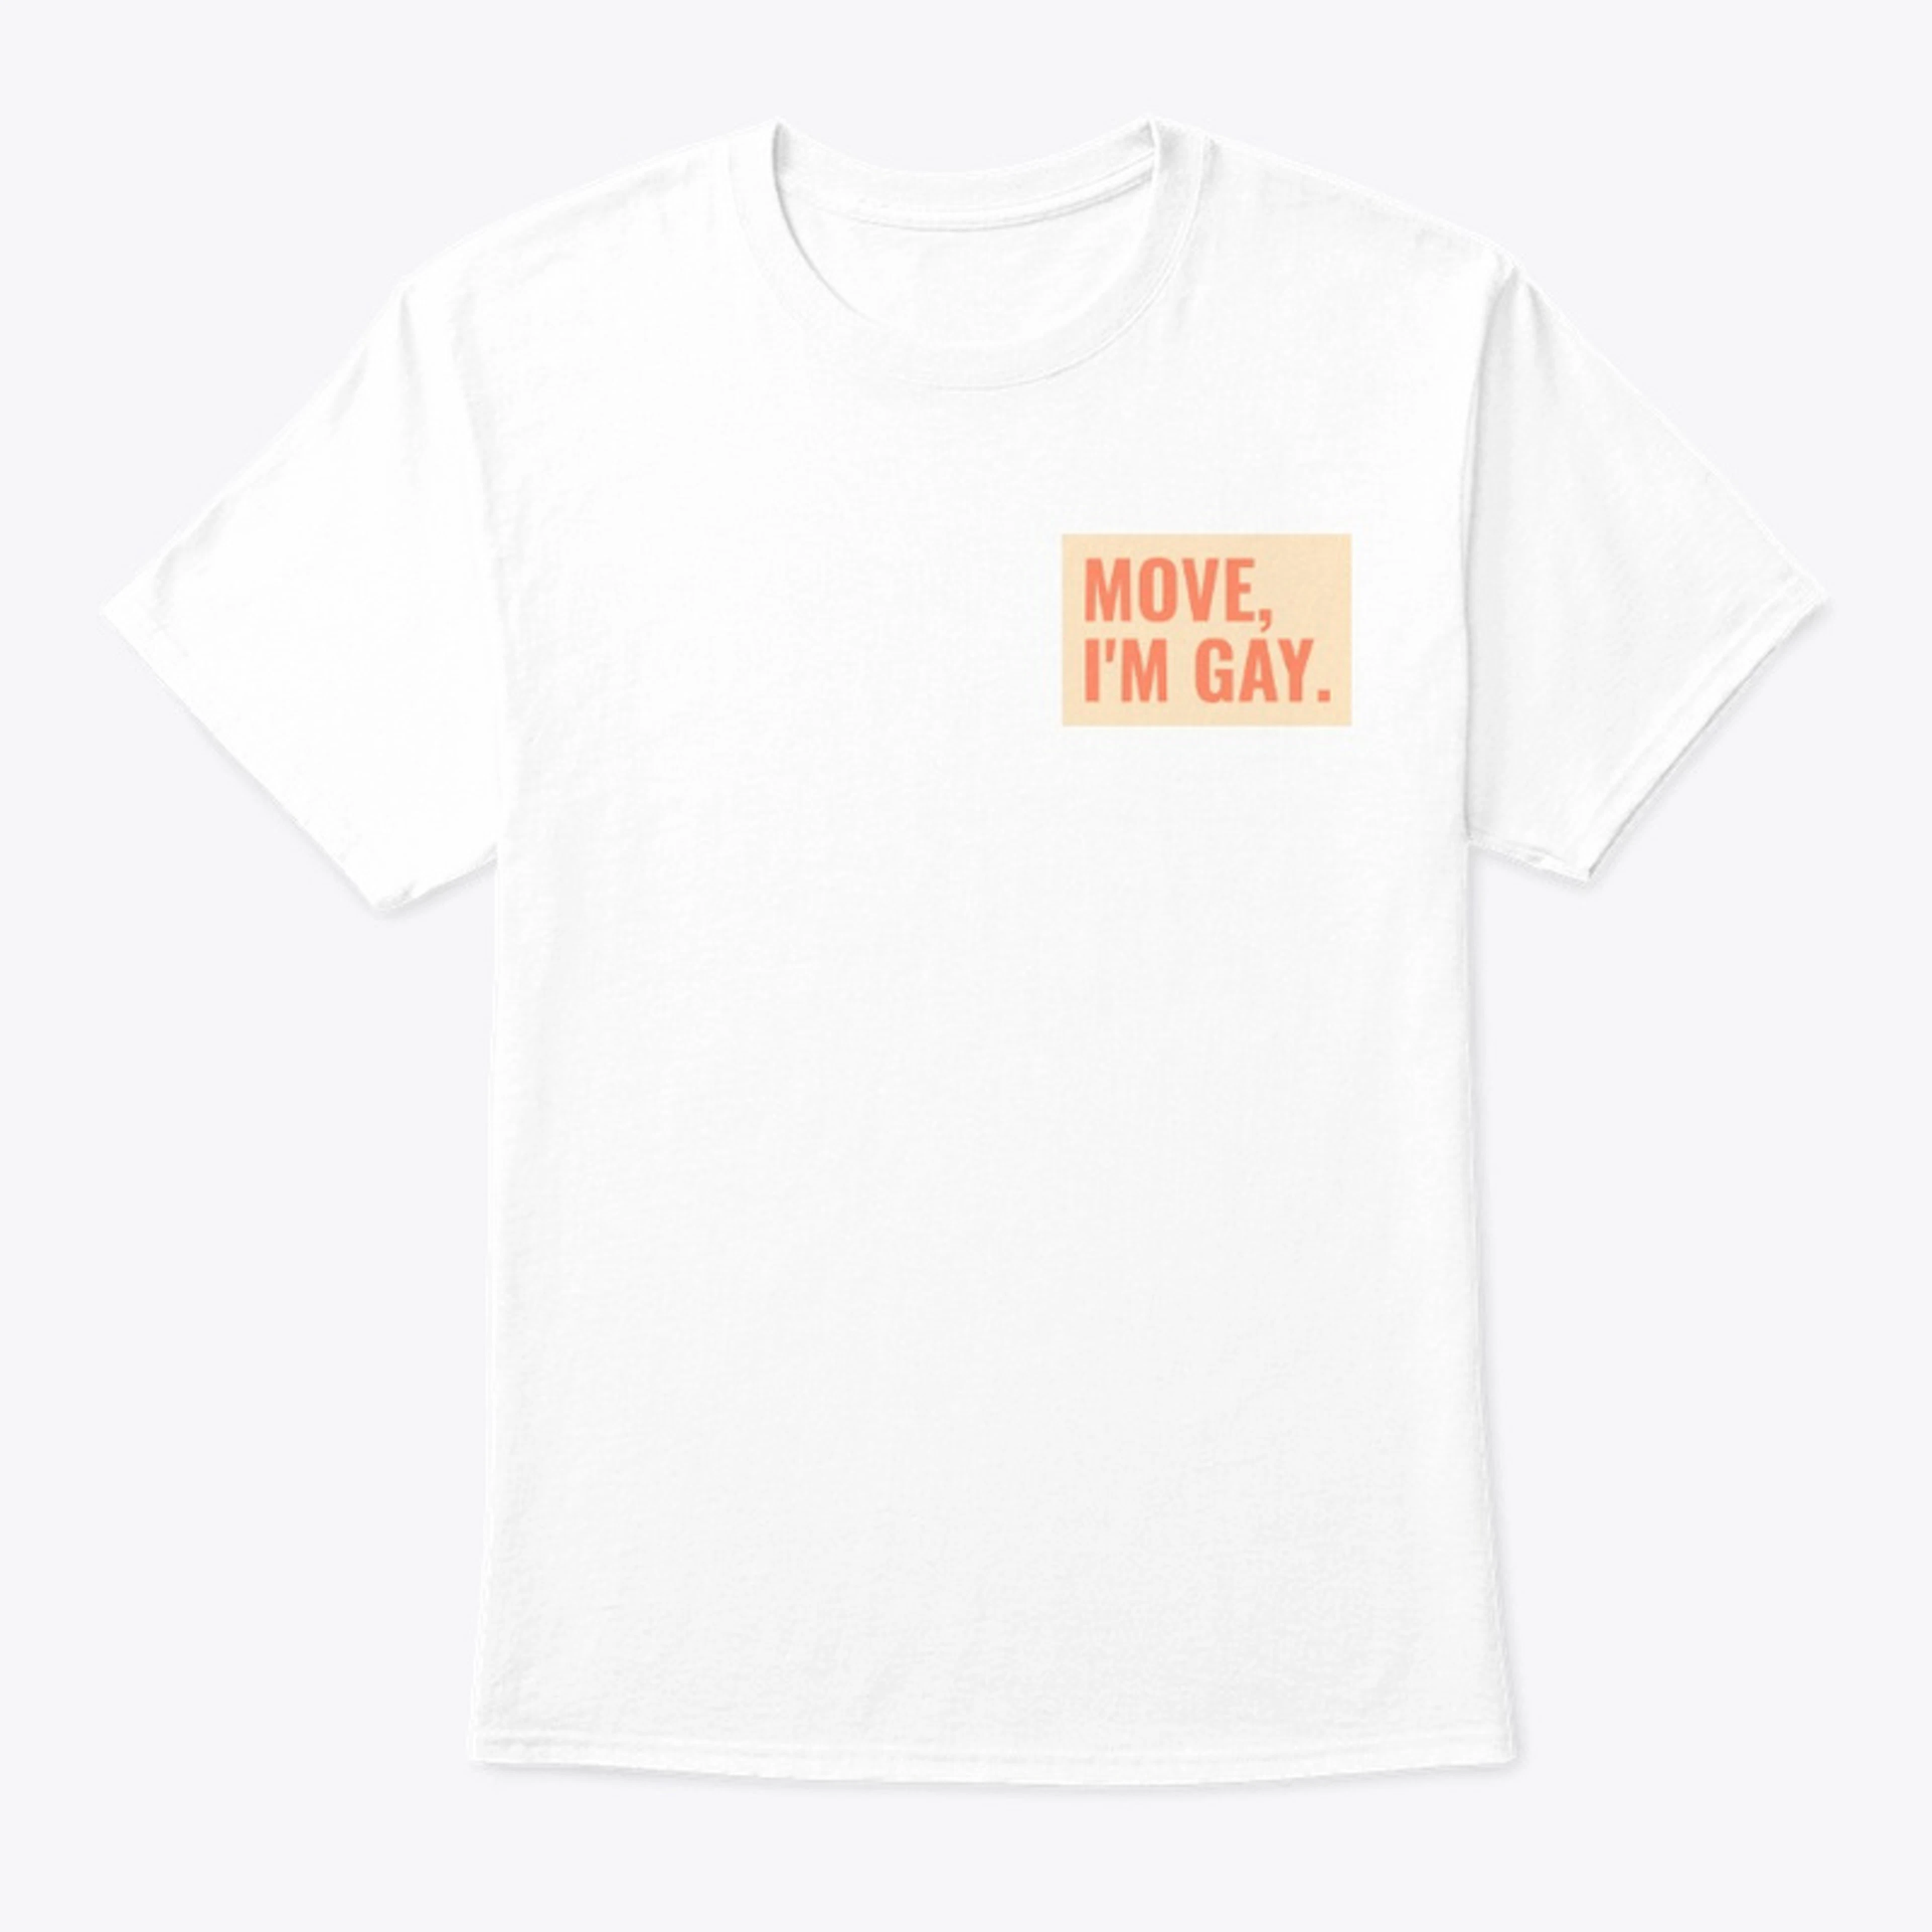 Move, I'm gay shirt